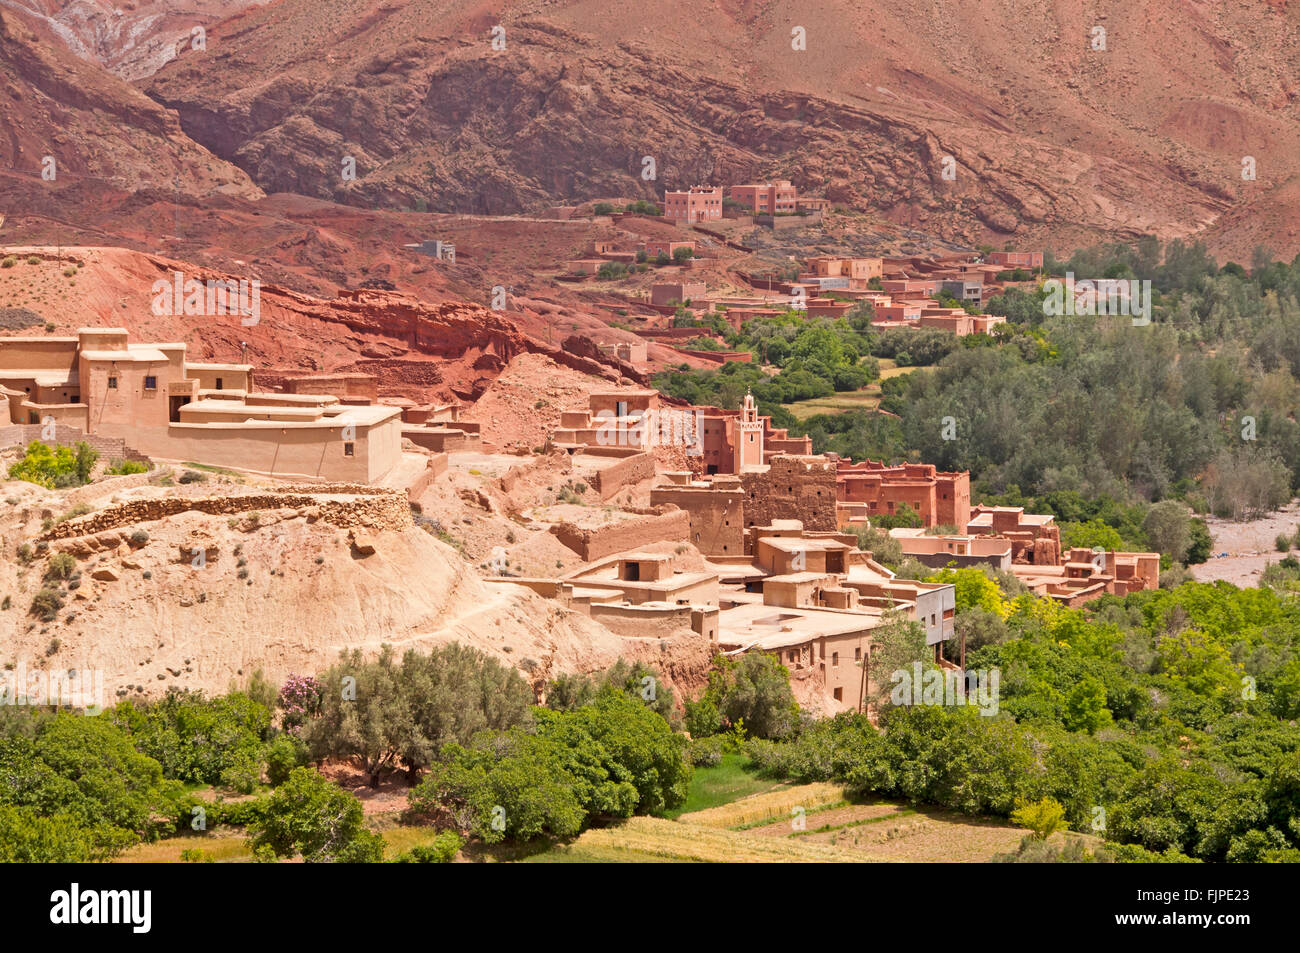 Geografia / viaggi, Marocco, oasi Tinerhir abitato, viste sulla città / cityscapes, Additional-Rights-Clearance-Info-Not-Available Foto Stock